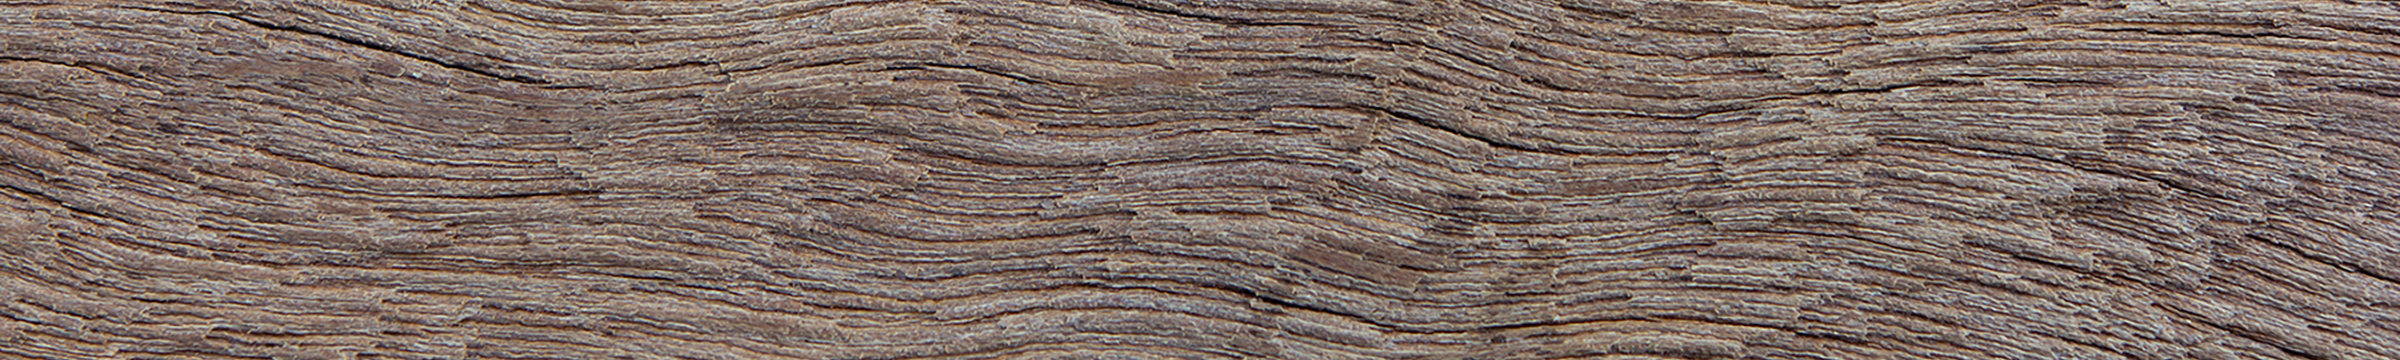 houtstructuur